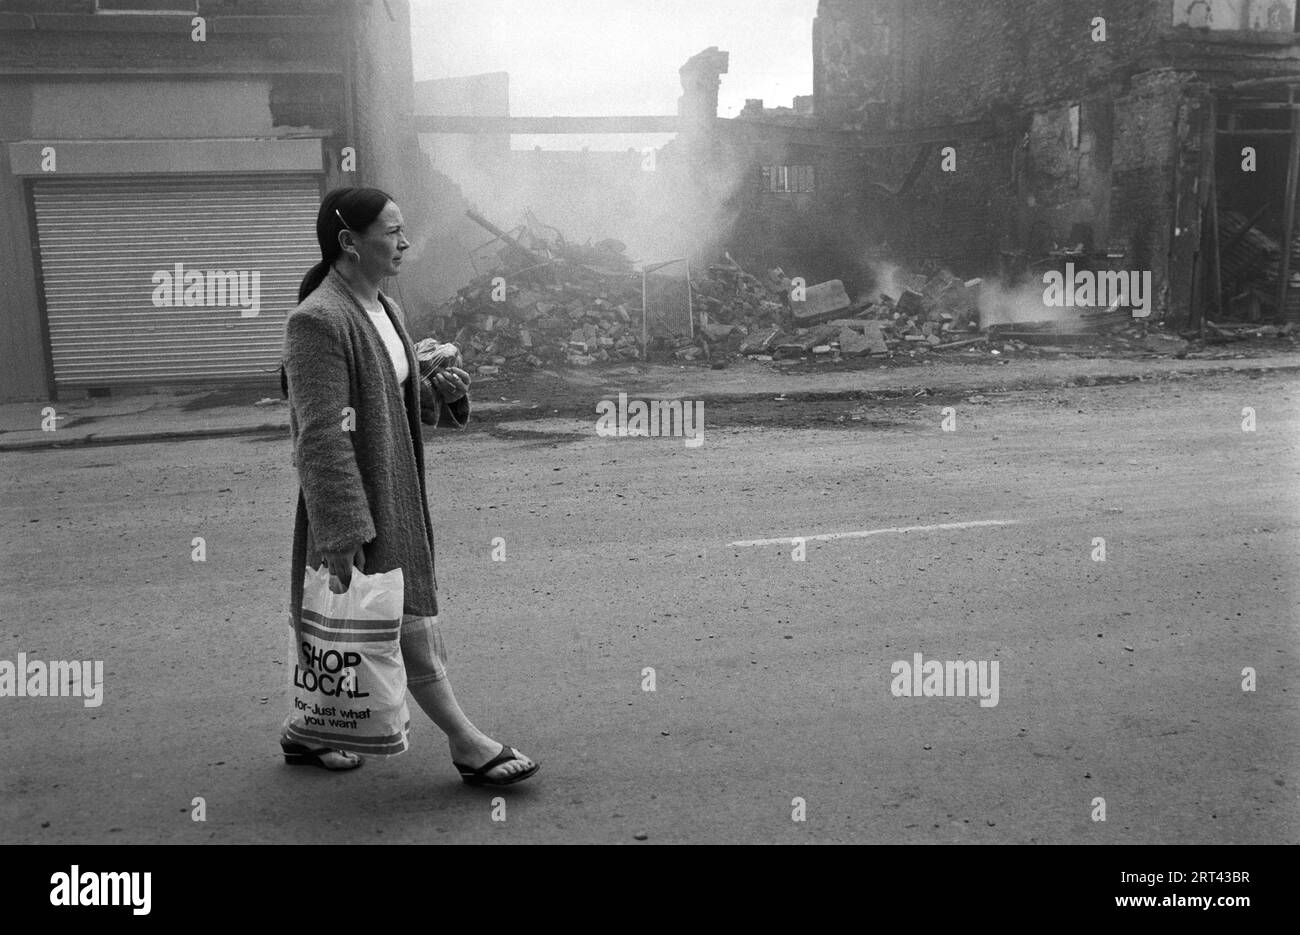 Toxteth Riots 1981 UK.la mattina dopo la notte dei disordini, una gente del posto esce per strada per osservare i danni causati dai disordini, dagli incendi e dagli edifici distrutti. Toxteth, Liverpool 8, Inghilterra circa luglio 1980s HOMER SYKES Foto Stock